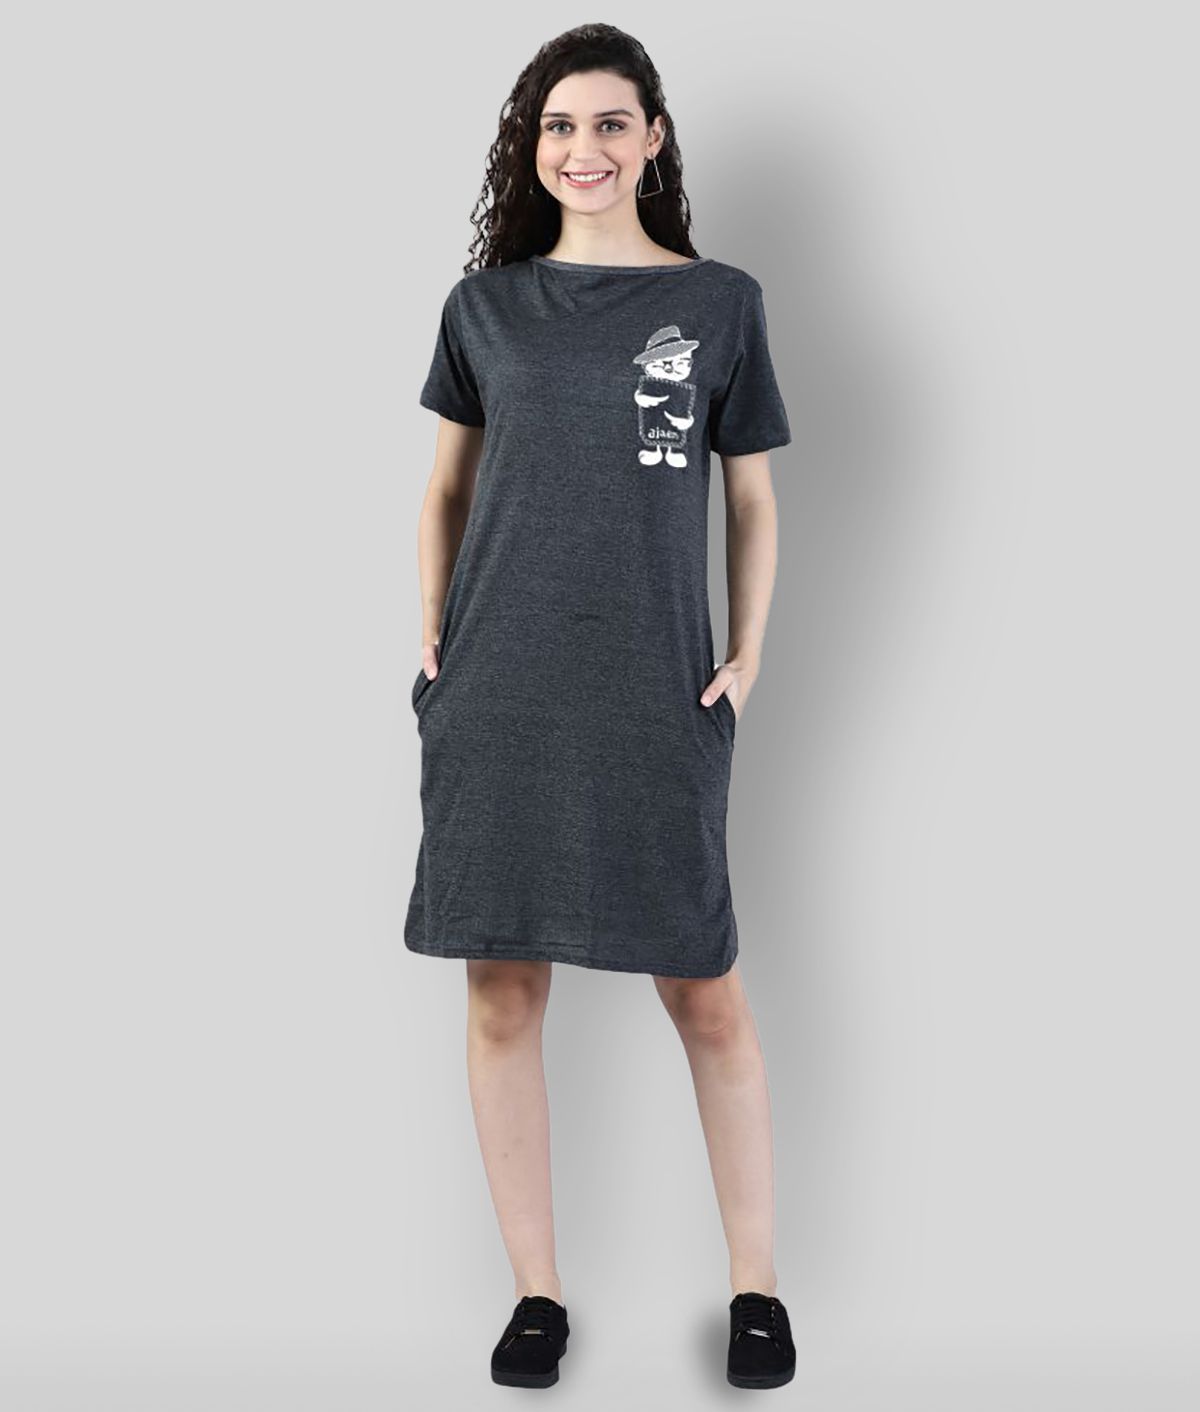 Broadstar - Grey Melange Cotton Blend Women's T-shirt Dress ( Pack of 1 )